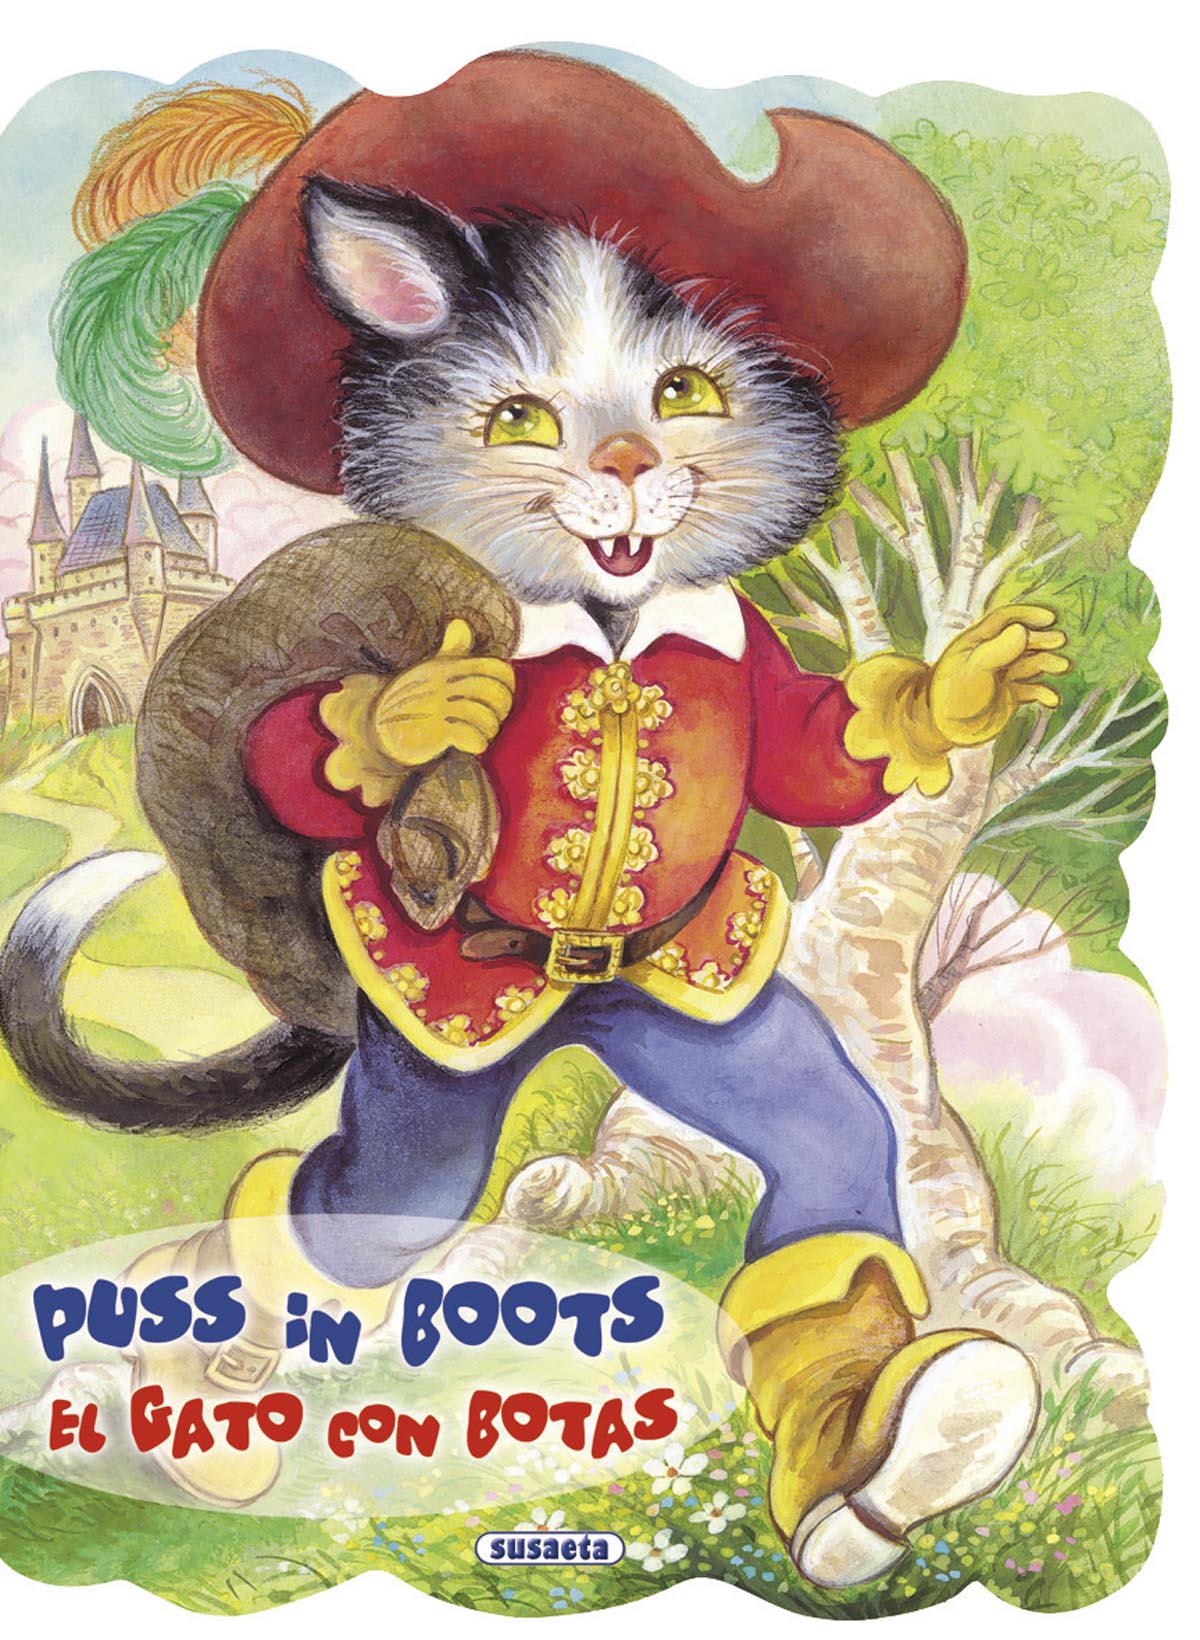 Puss in boots - El gato con botas